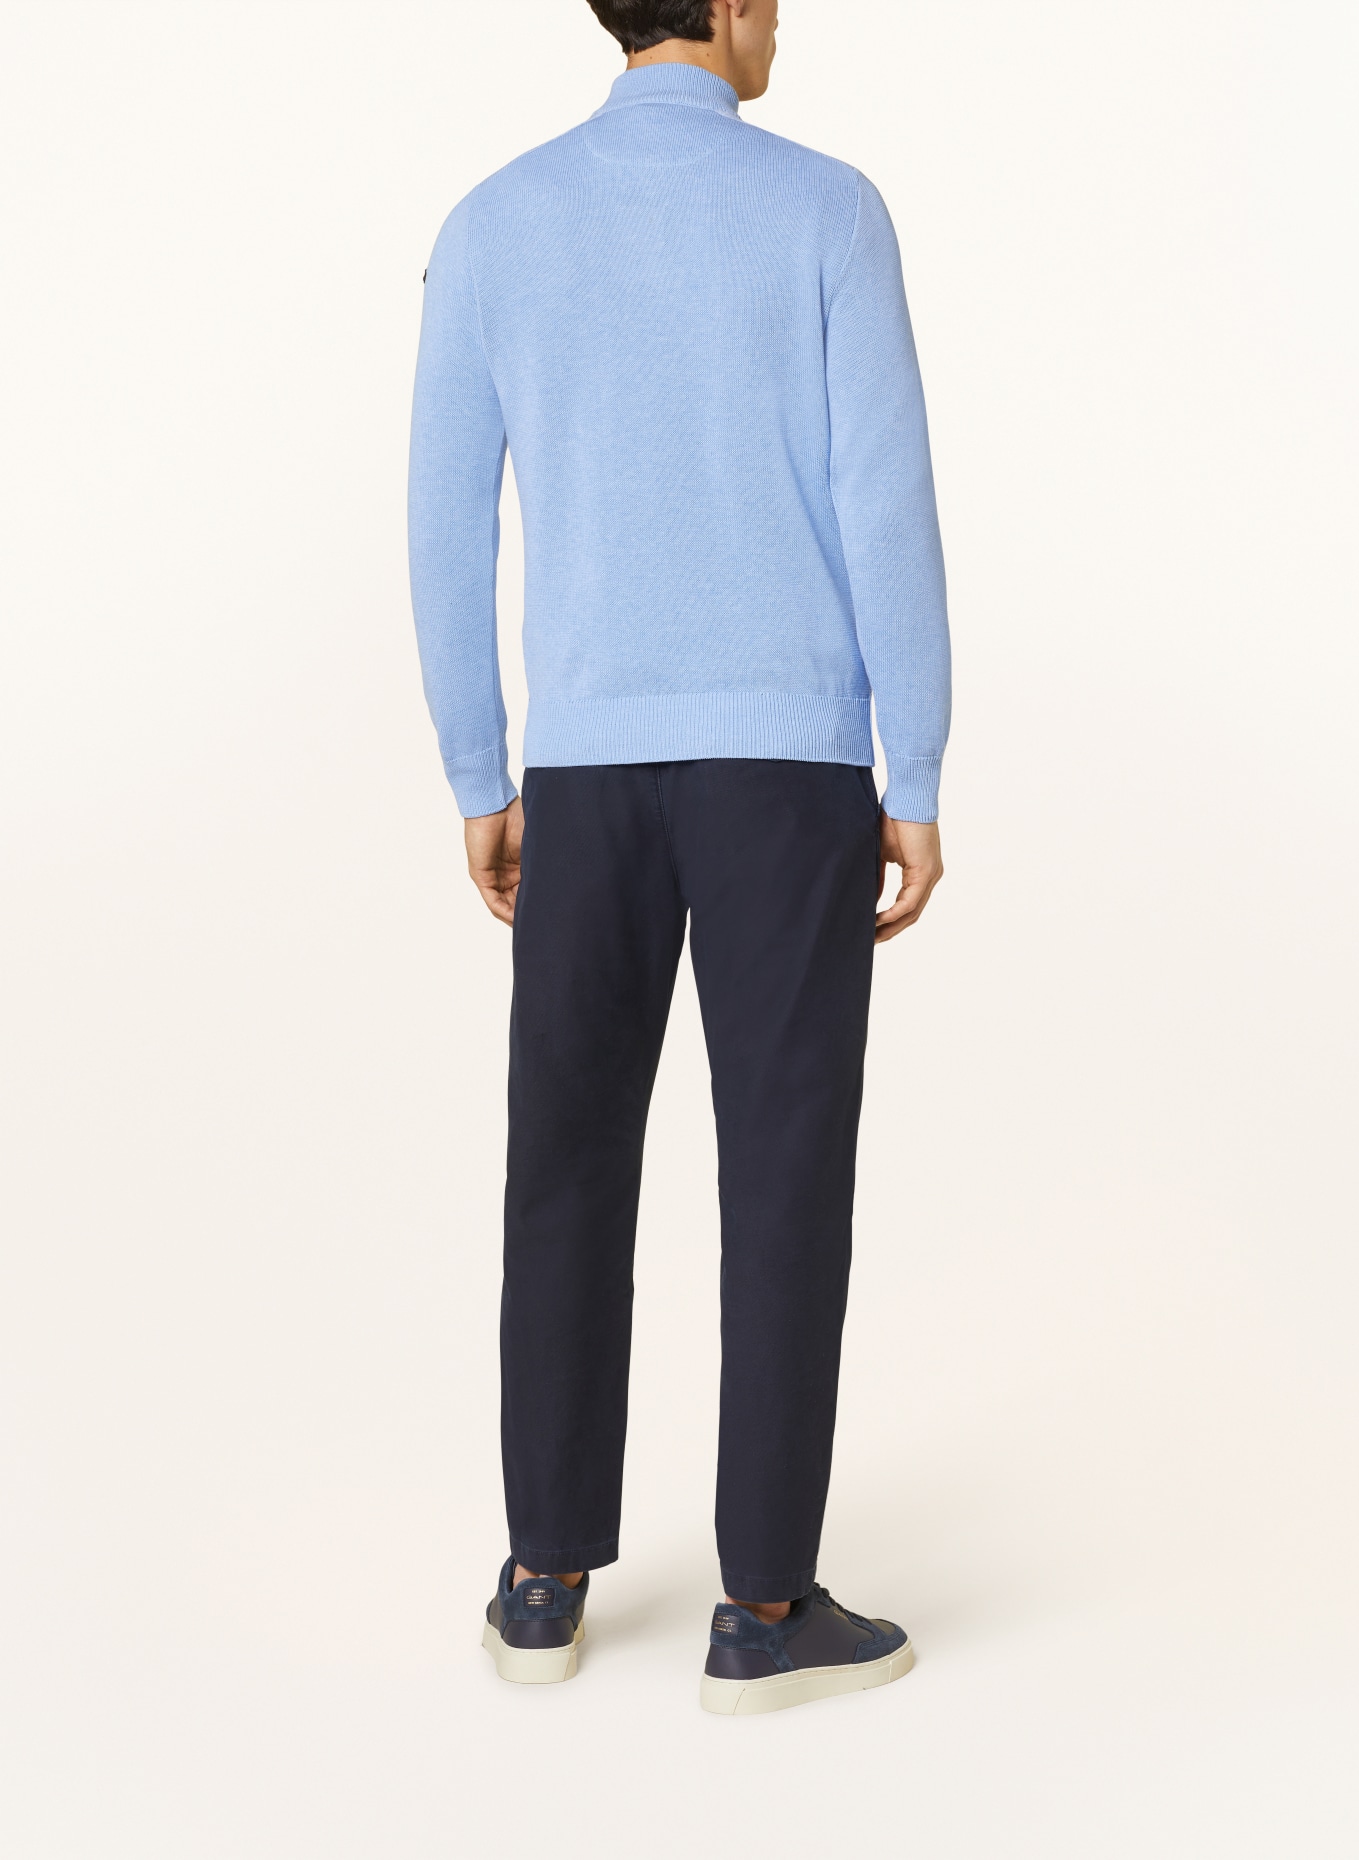 PAUL & SHARK Half-zip sweater, Color: LIGHT BLUE (Image 3)